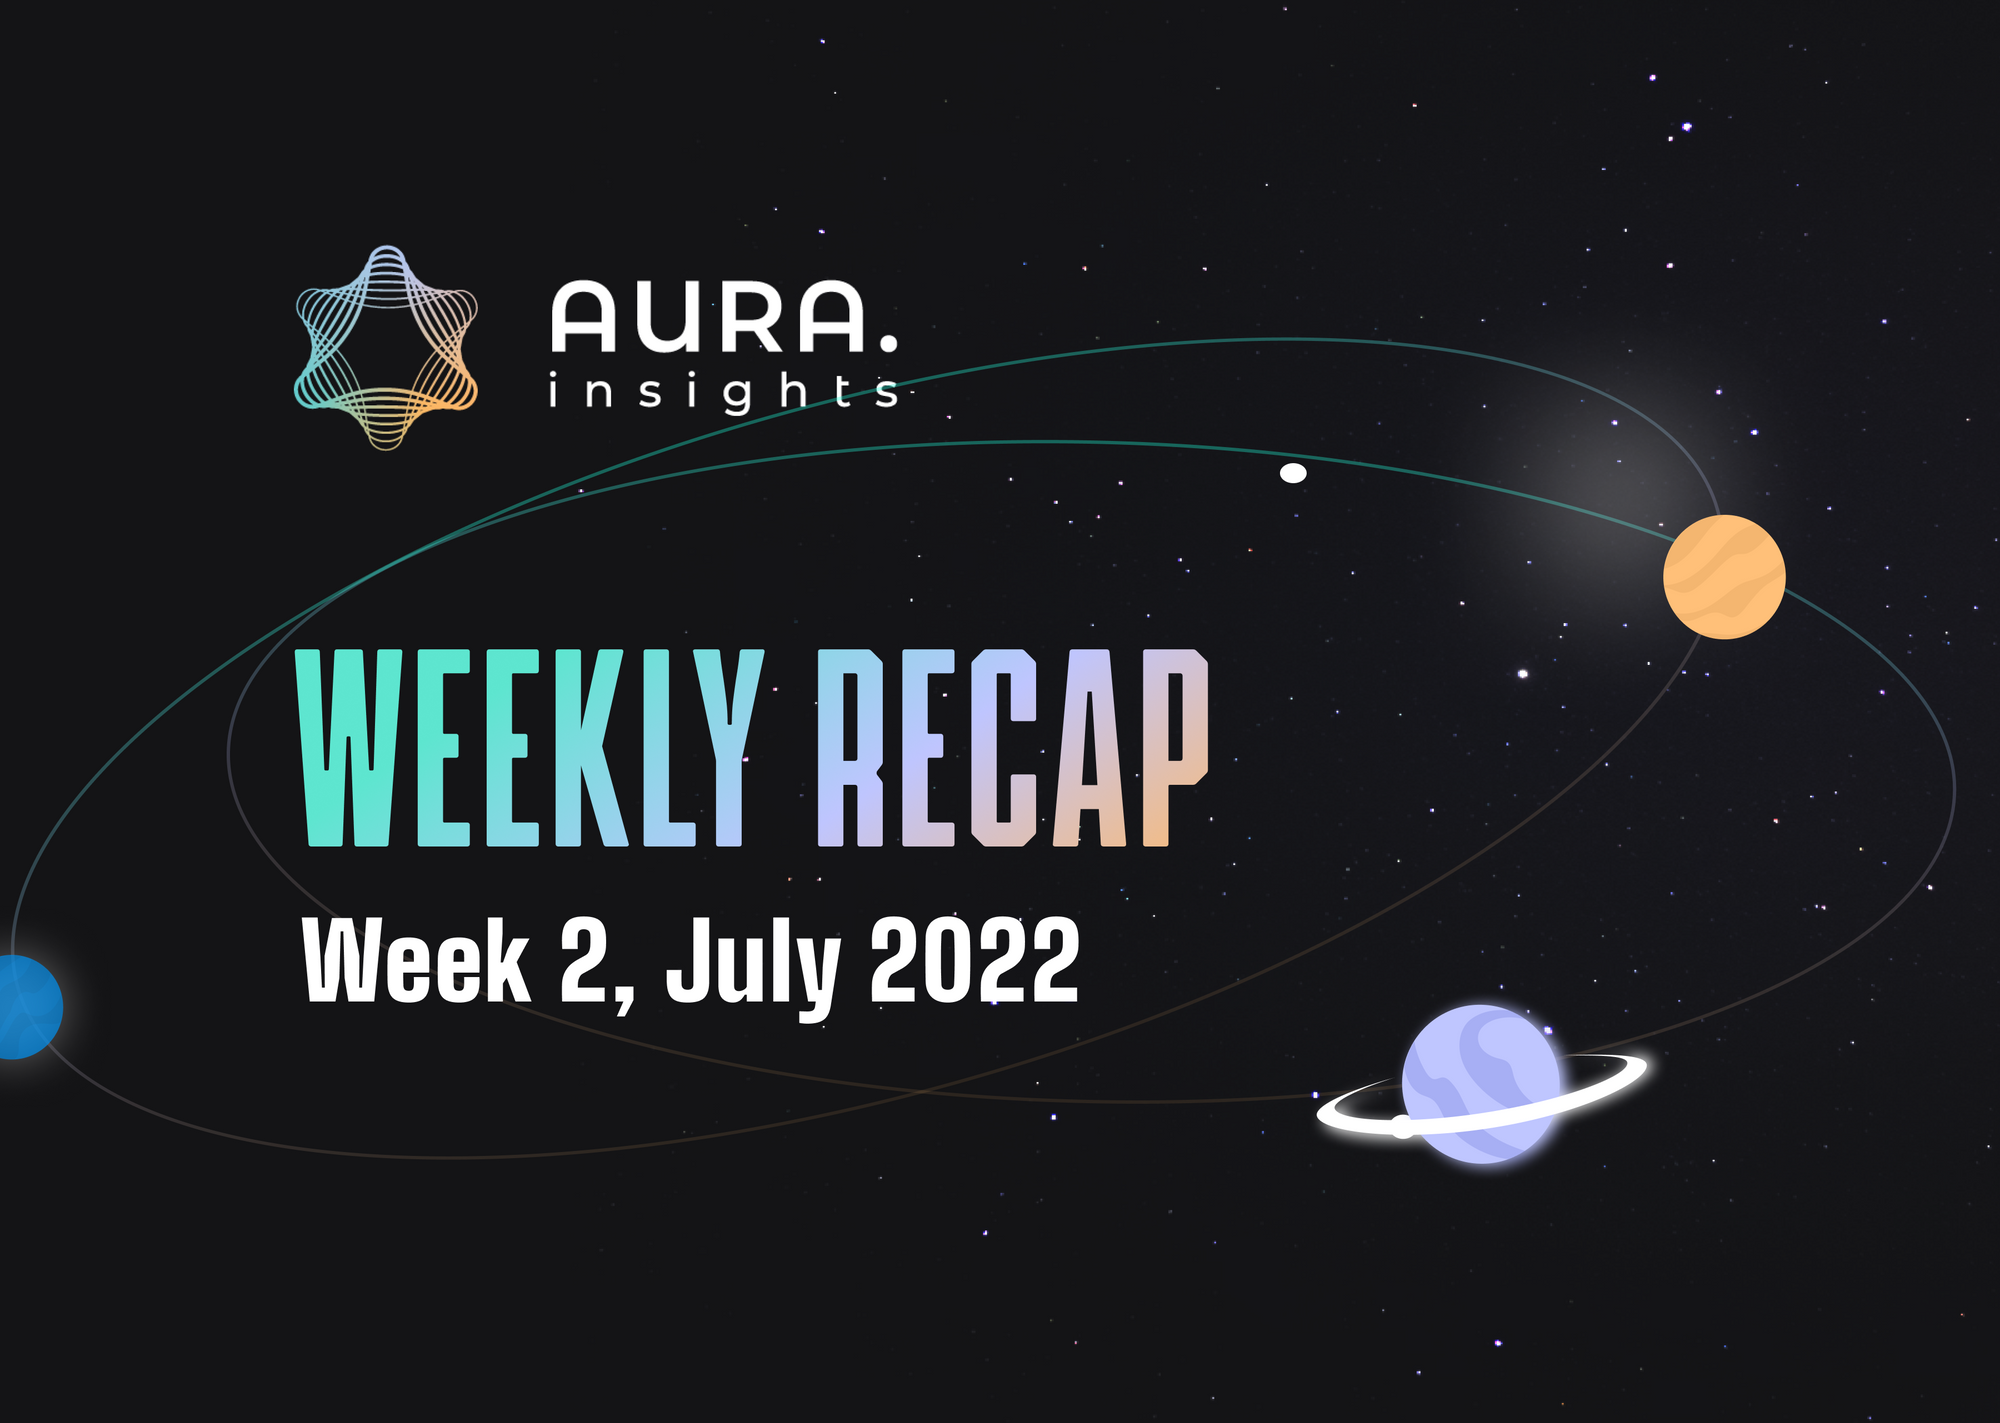 AURA WEEKLY RECAP #2 - WEEK 2, JULY